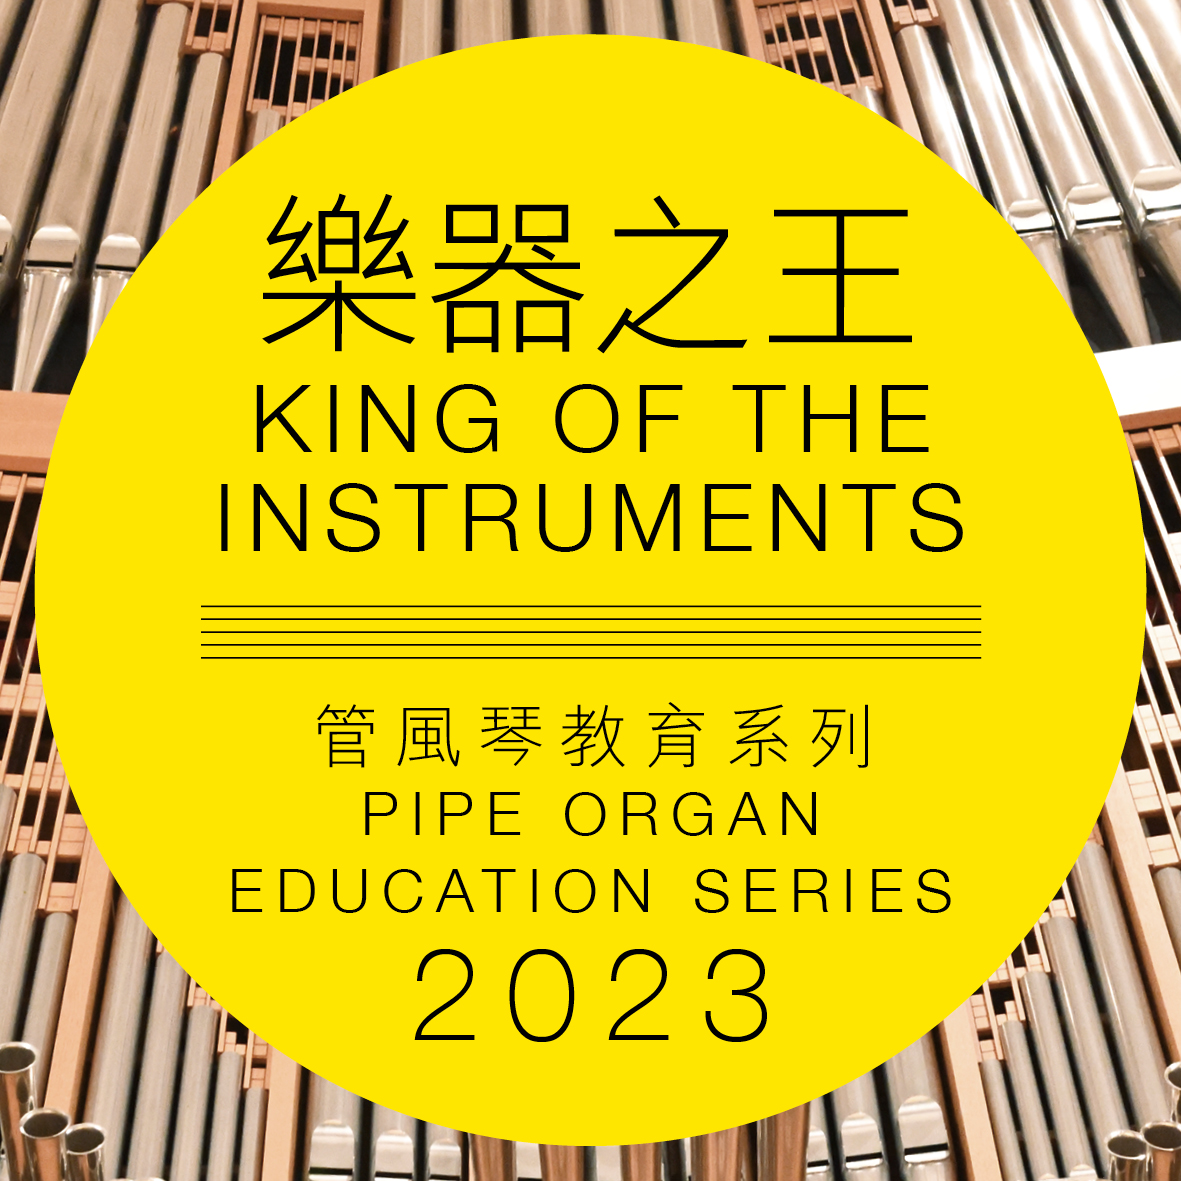 香港文化中心「乐器之王」管风琴教育系列 2023